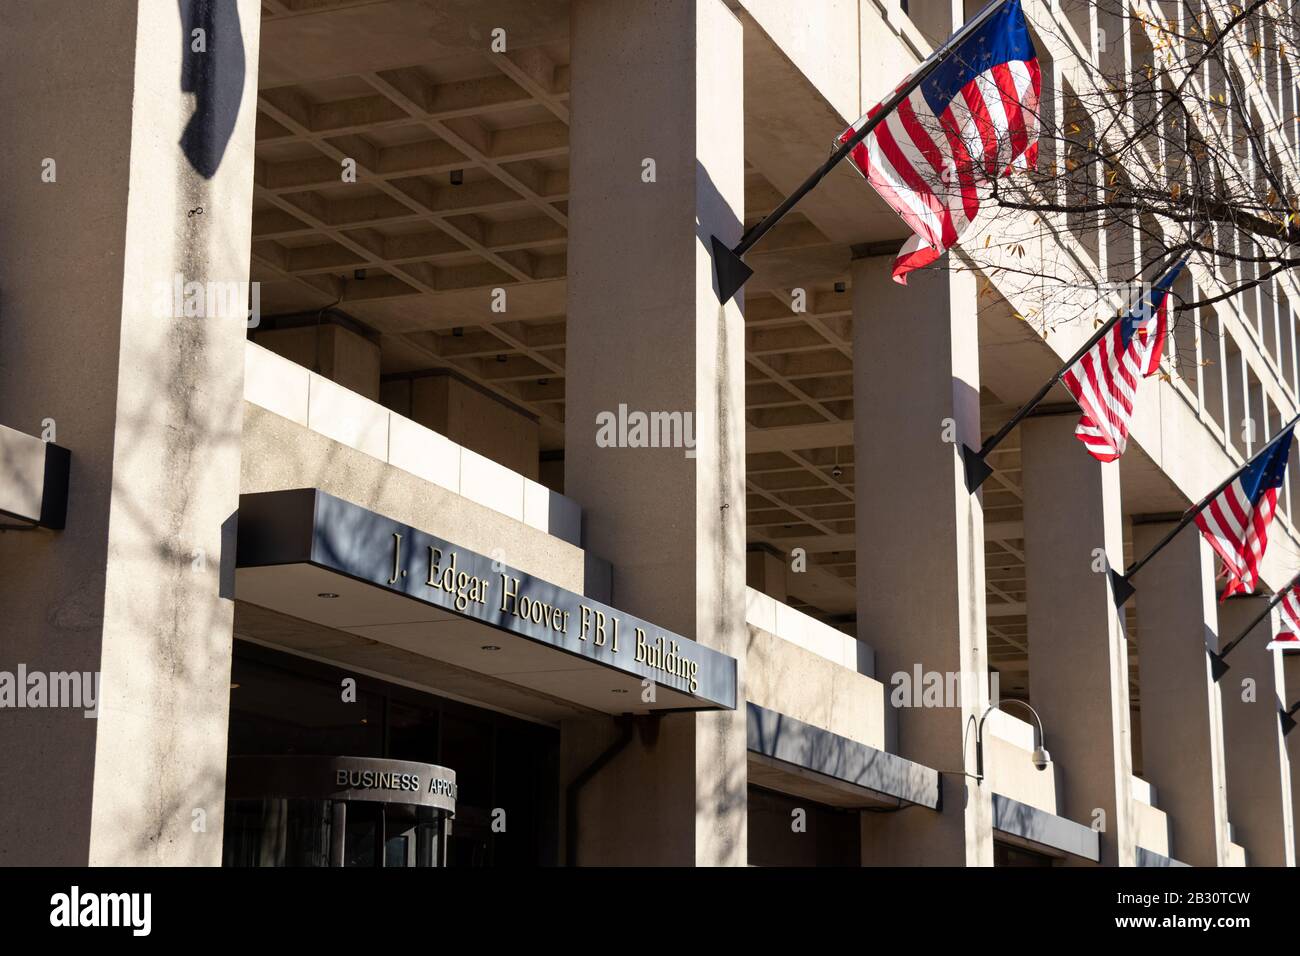 Panneau au-dessus de l'entrée de l'édifice du FBI J. Edgar Hoover, des drapeaux américains ont vu se foutir en arrière-plan. Banque D'Images